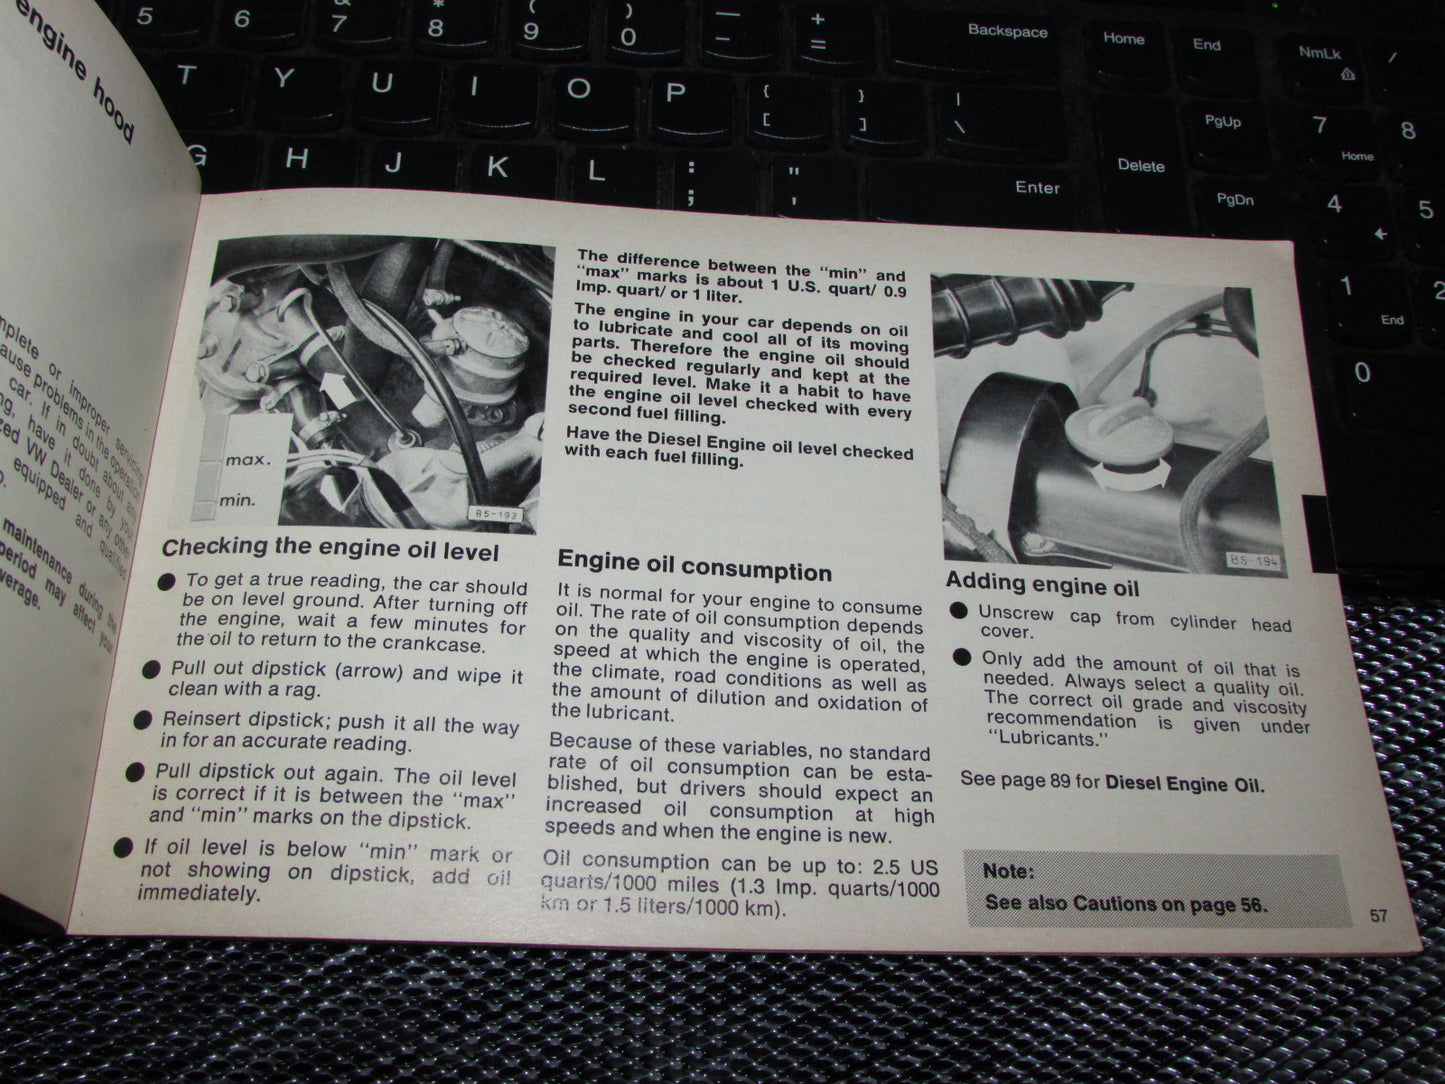 Volkswagen Rabbit (1978) Owners Manual